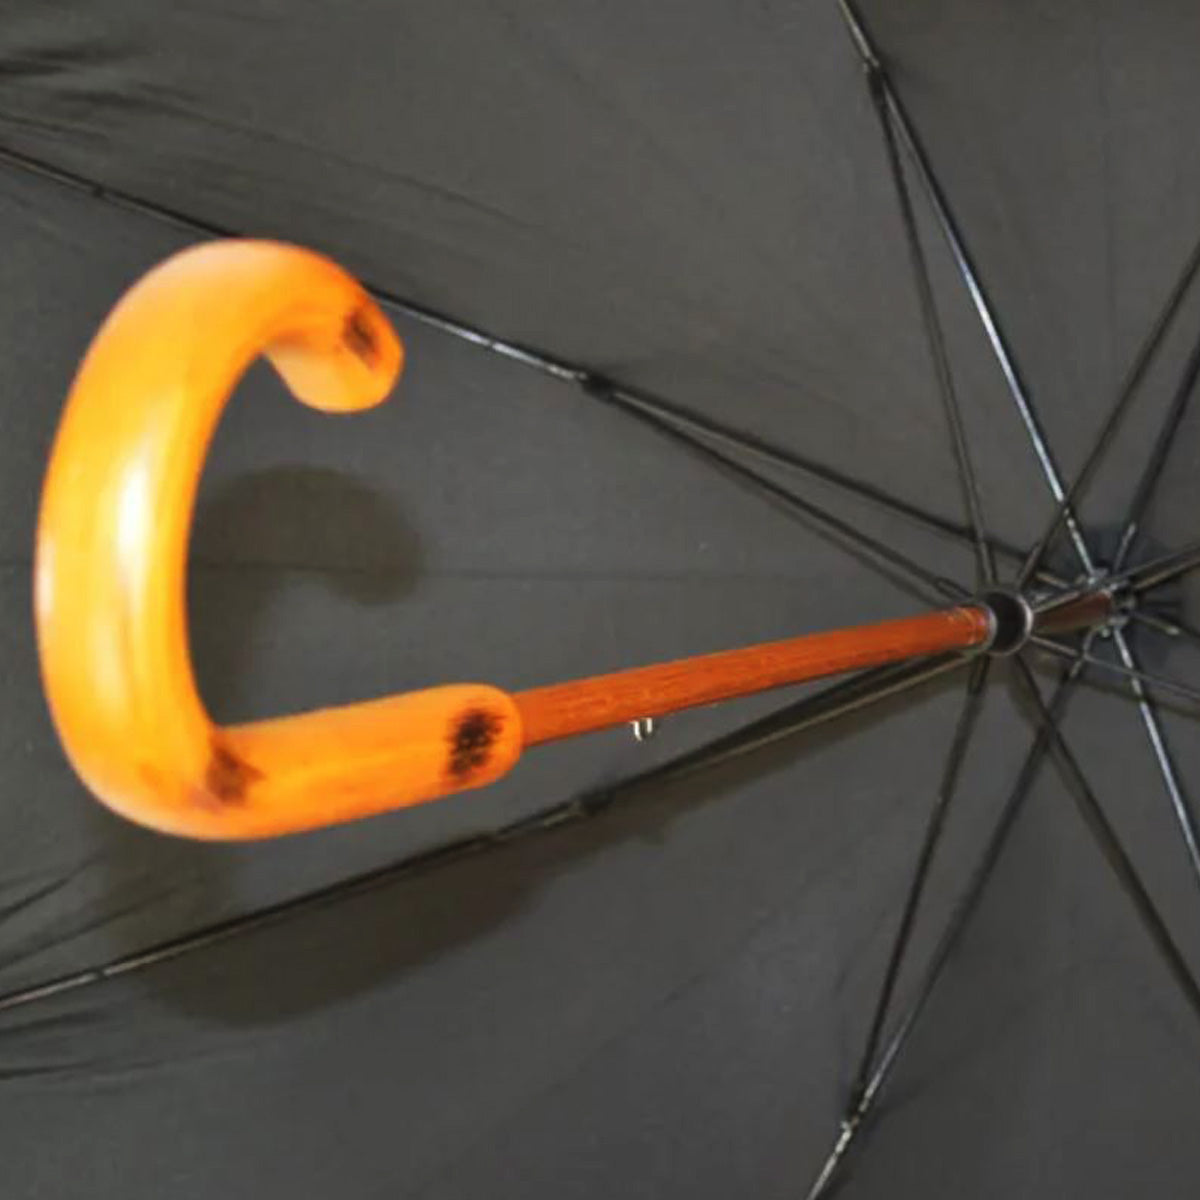 Classic Mens Auto Stick Black Umbrella Glyndebourne Shop